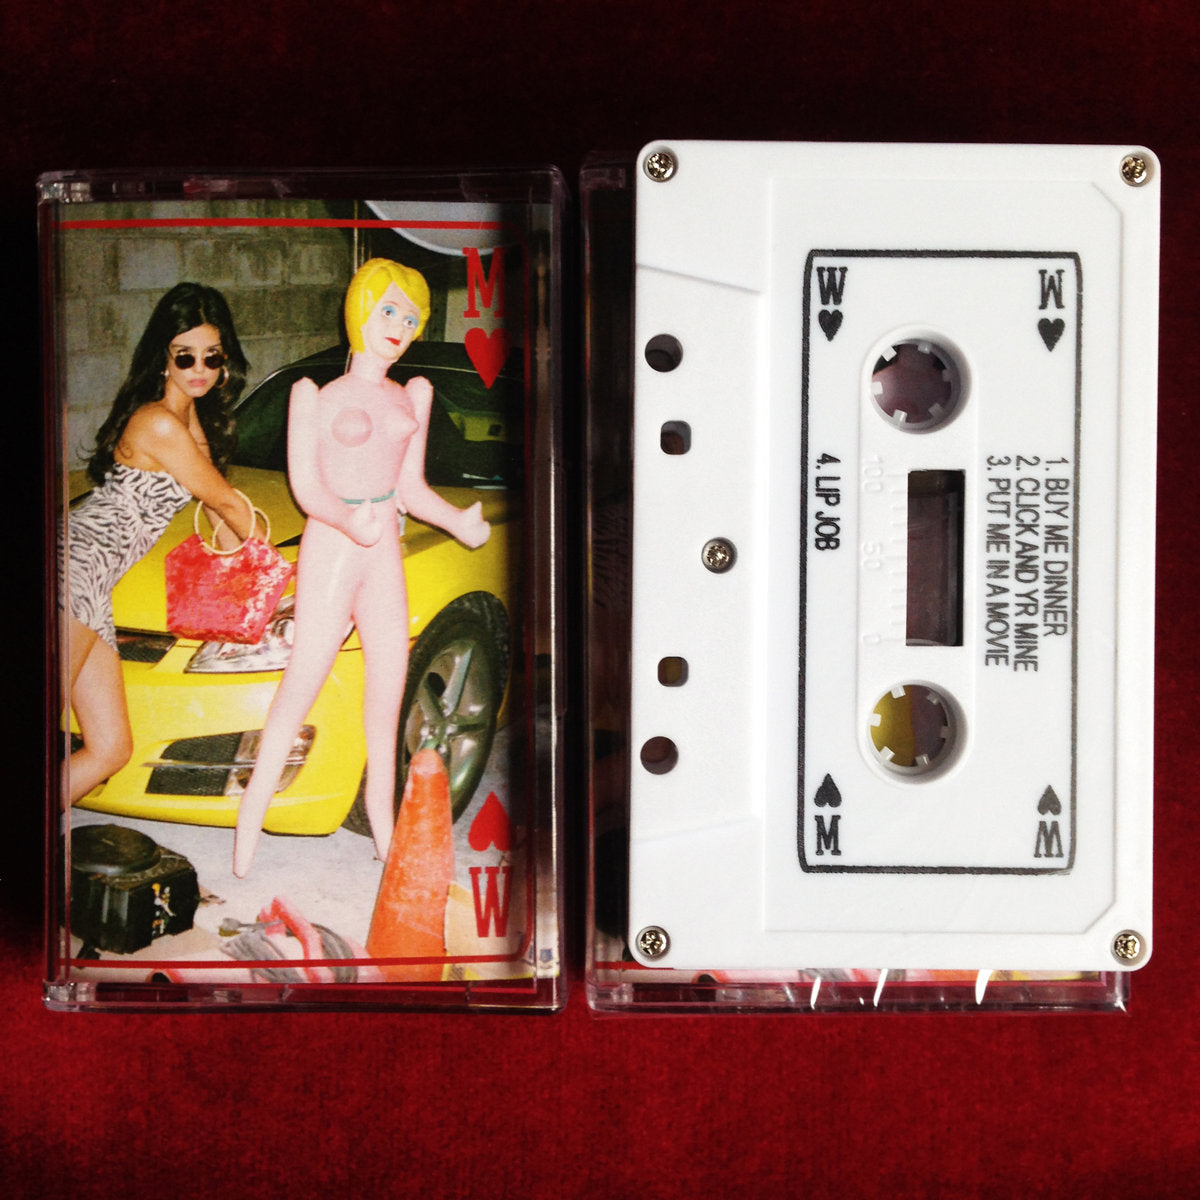 Miss World - Waist Management EP cassette